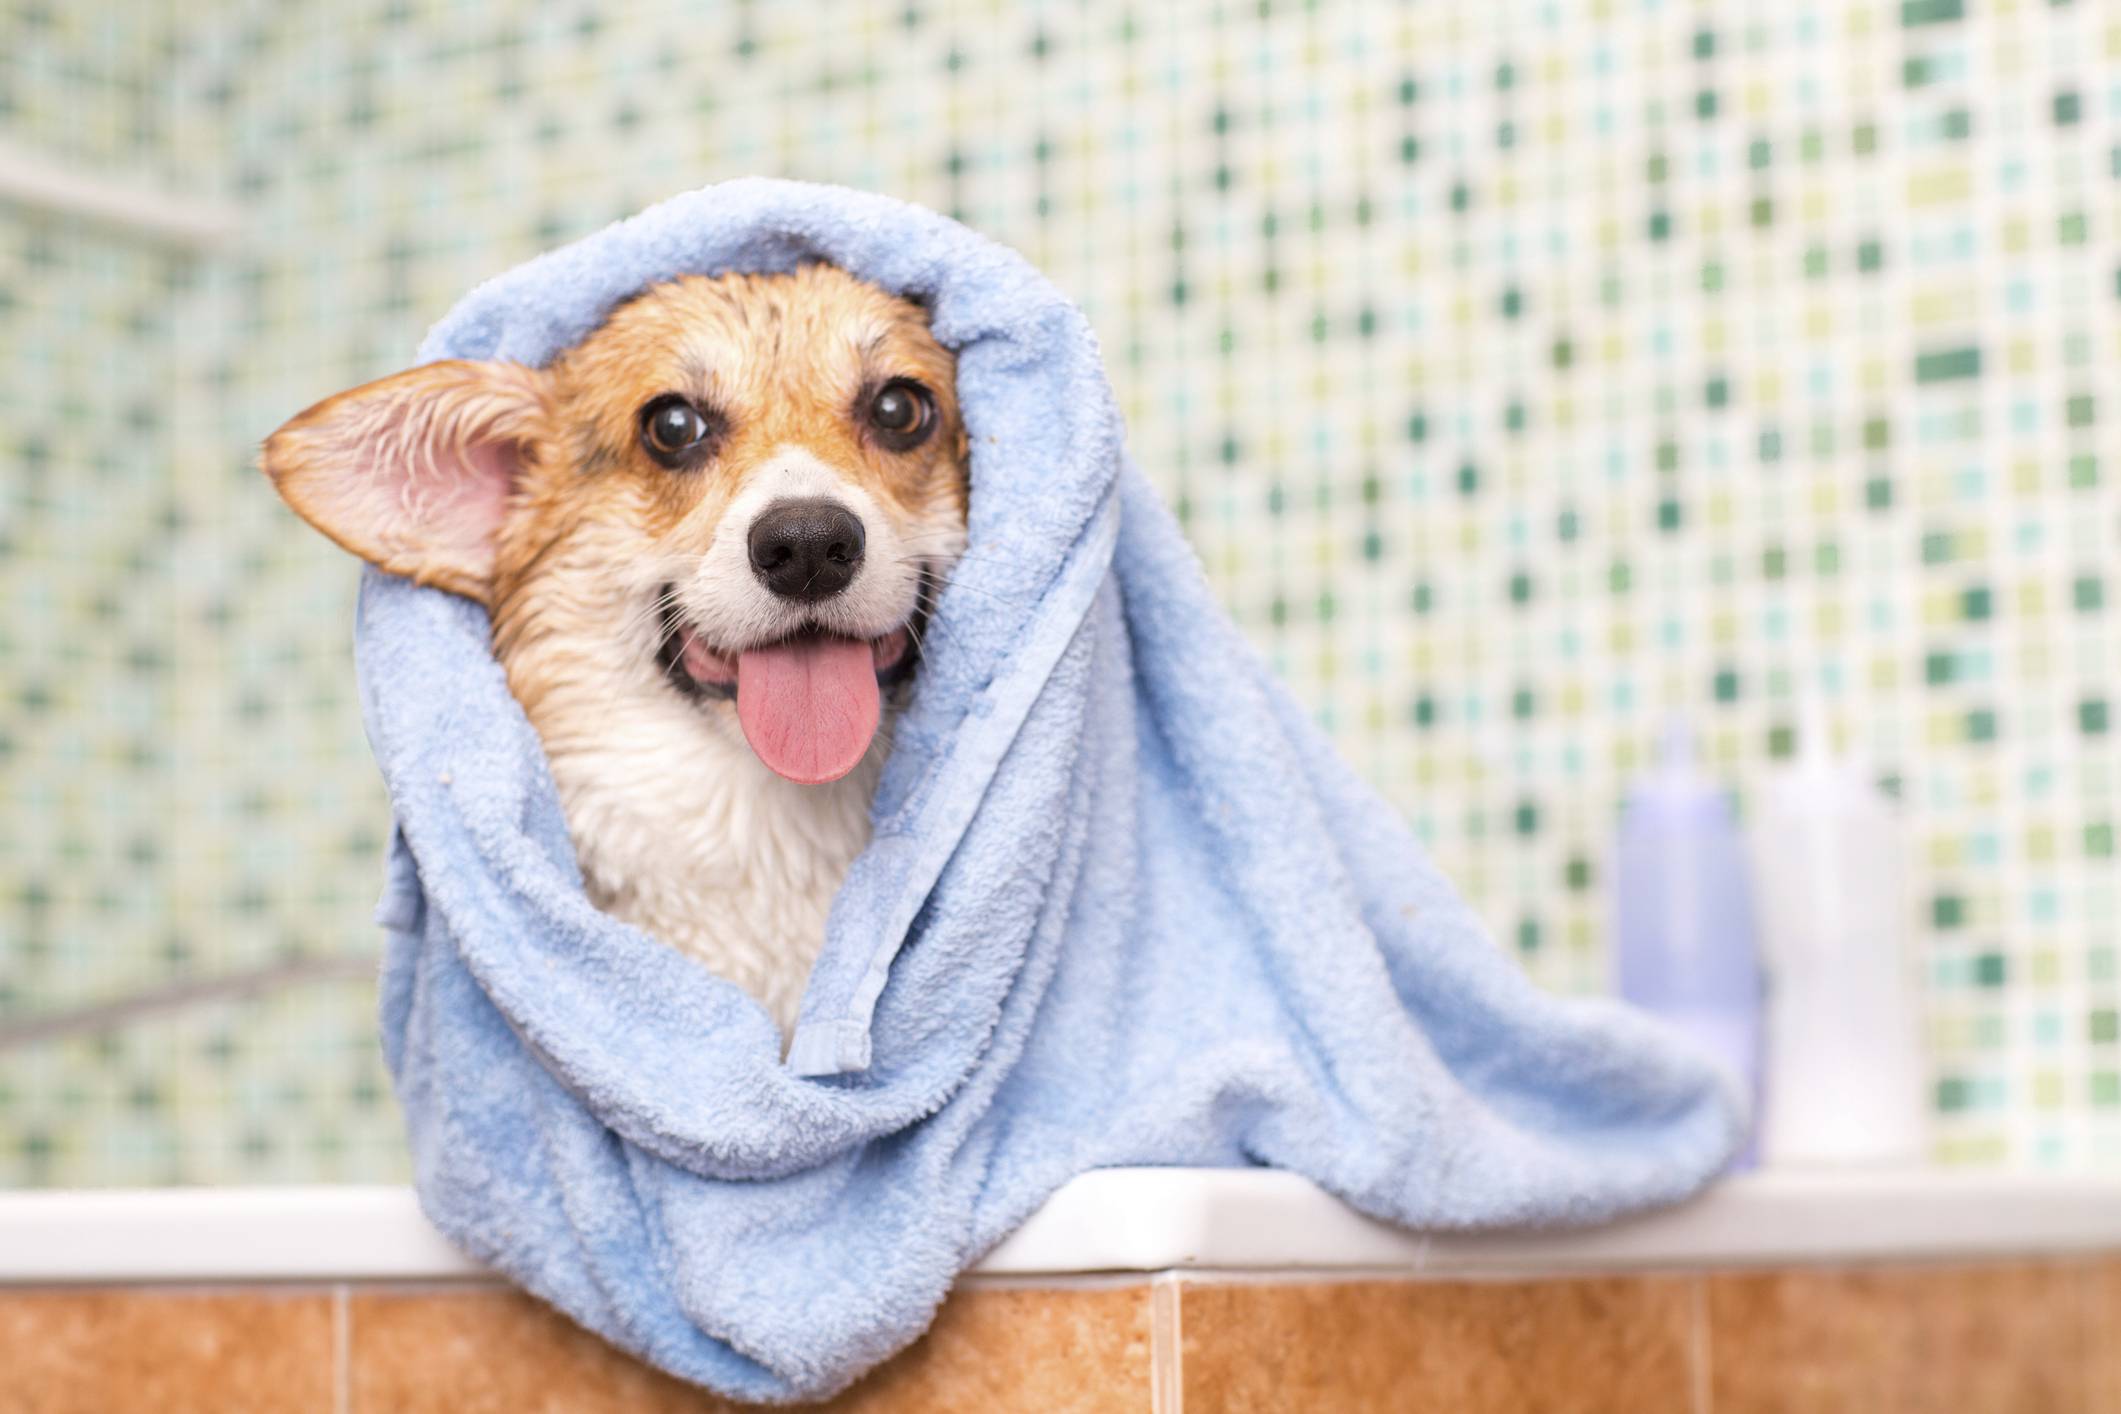 dog-bath-credit-primipil-getty-images.jpg